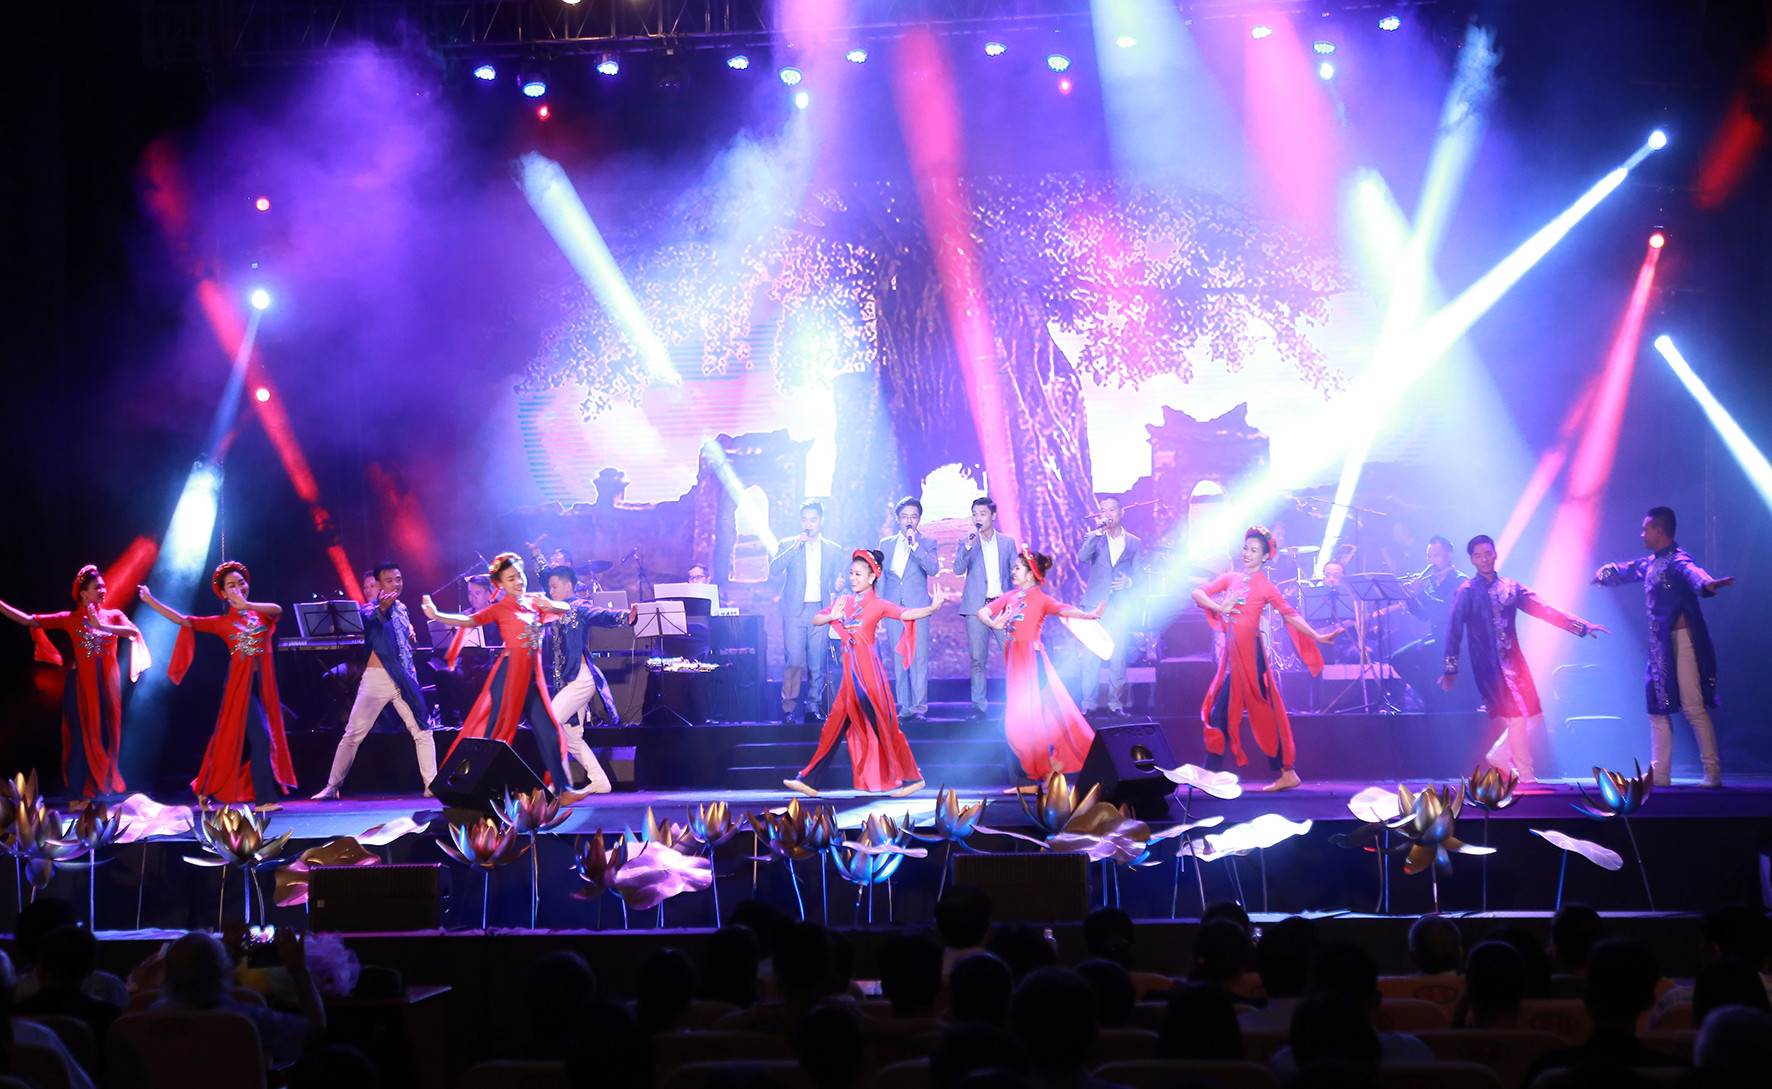 Sân khấu hoành tráng, hiệu ứng ánh sáng và âm thanh tuyệt đẹp cũng làm nên thành công của đêm nhạc của nhạc sỹ Nguyễn Trọng tạo tại quê nhà. Ảnh: Sách Nguyễn